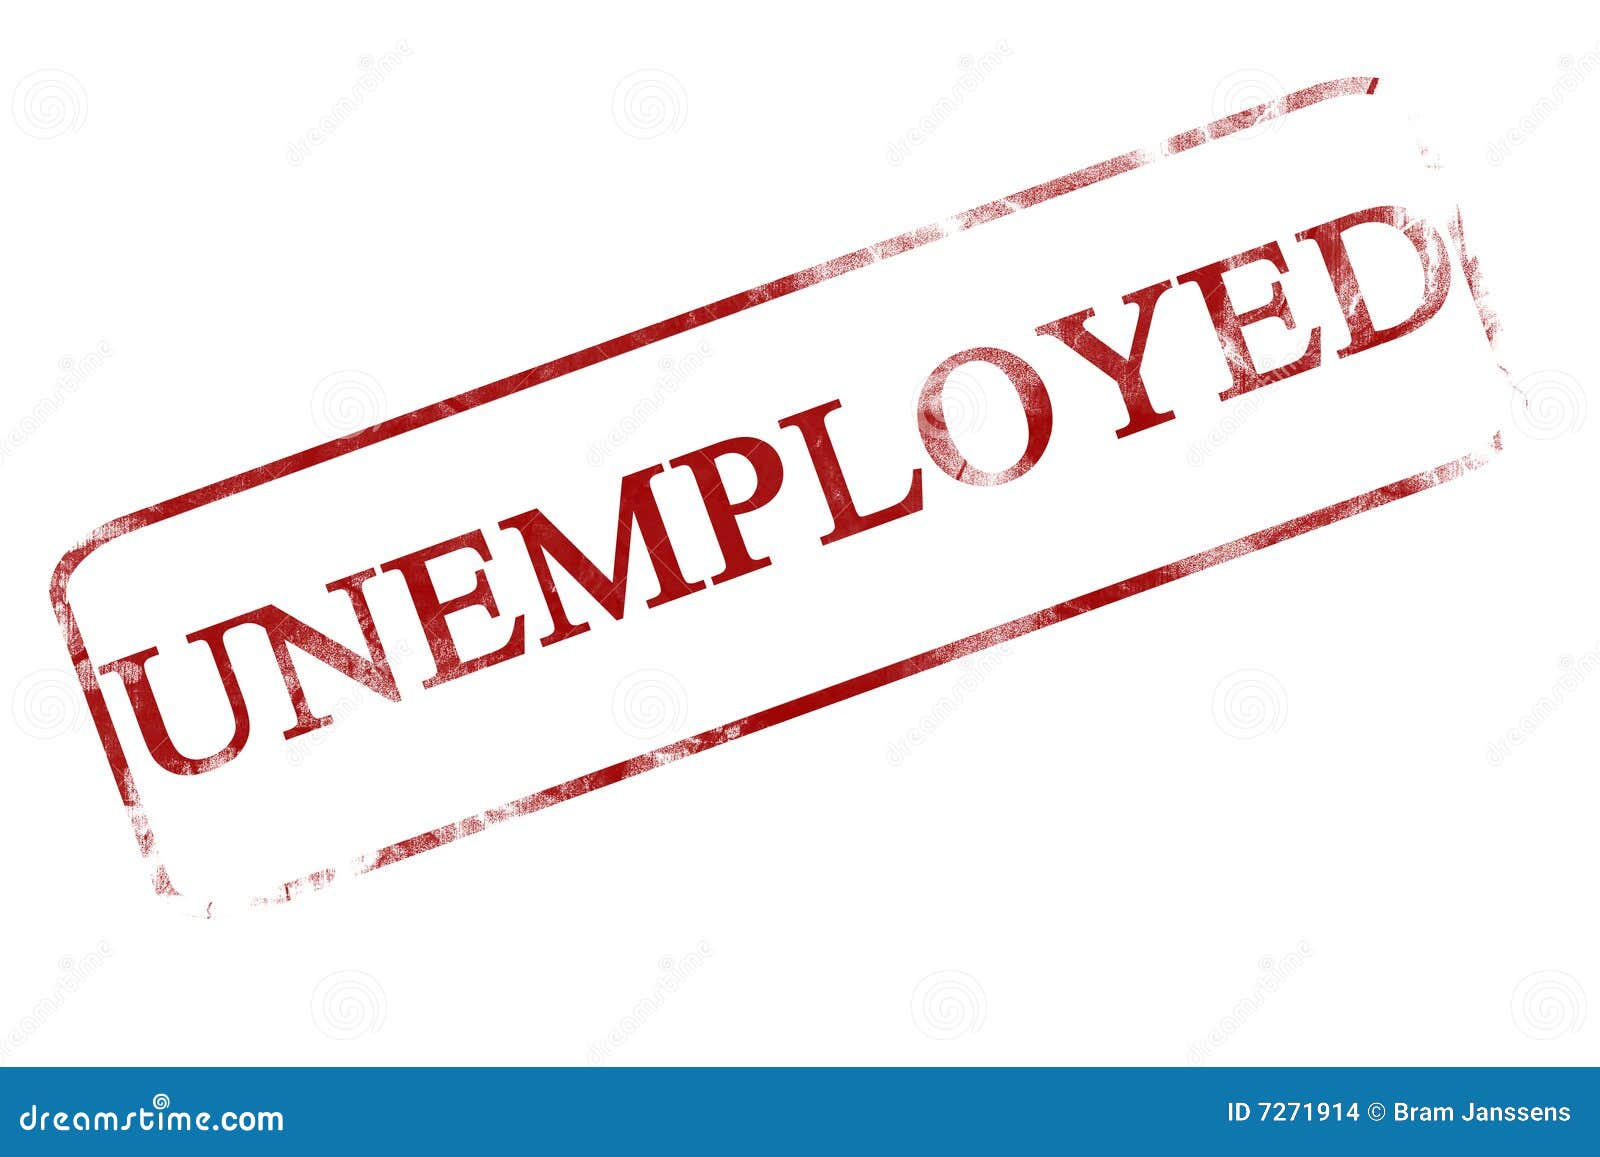 unemployment clipart images - photo #33